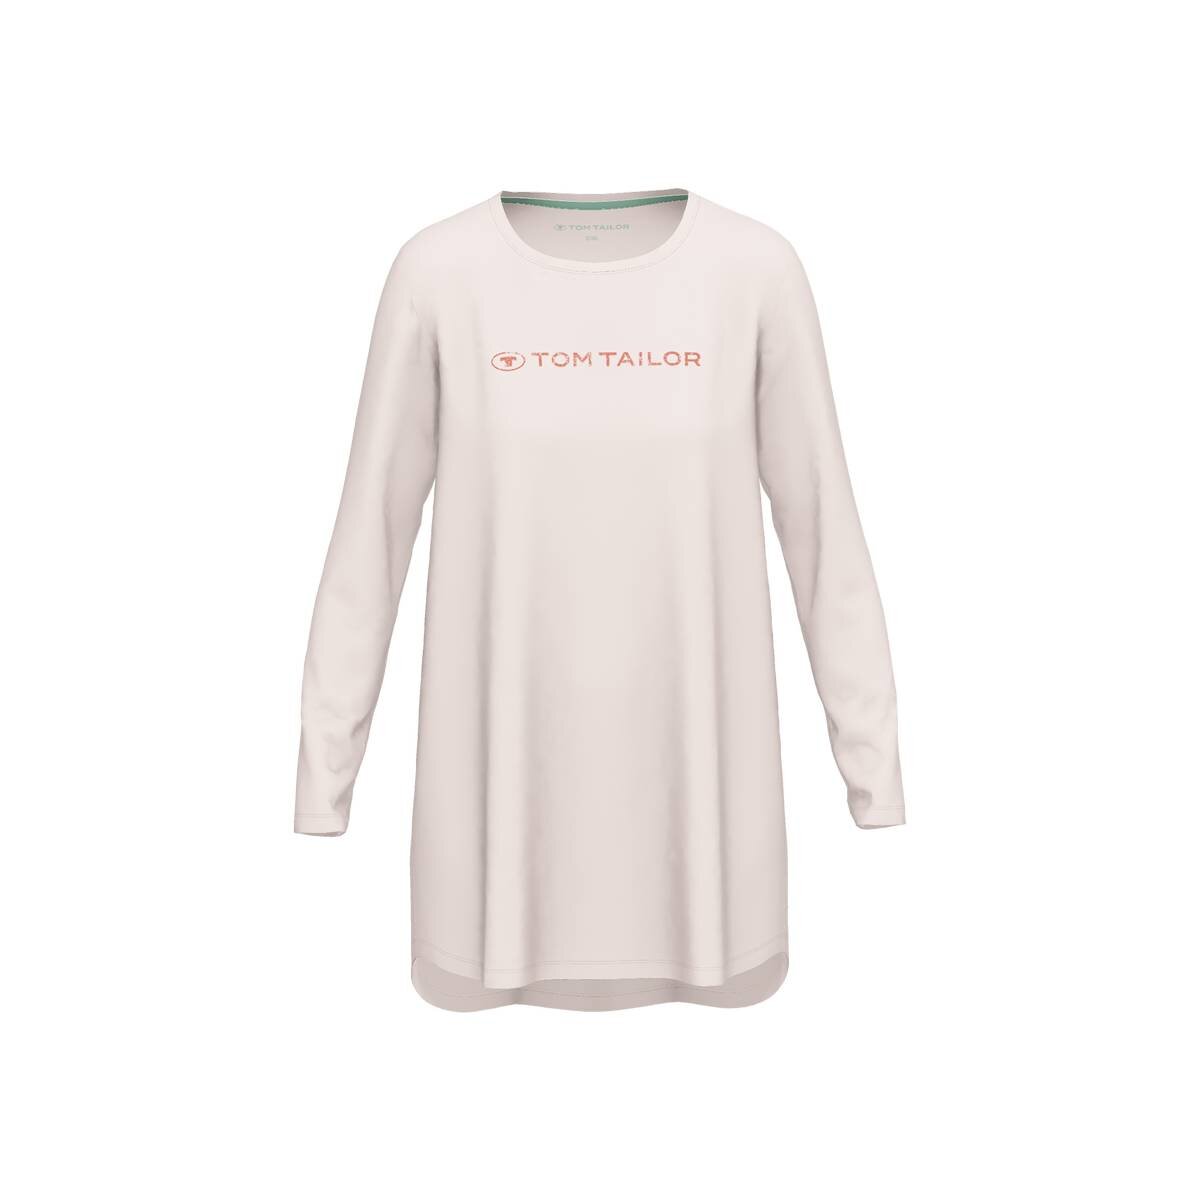 TOM TAILOR Damen Nachthemd - Sleepshirt, Rundhals, Baumwolle, Logo, l,  30,45 €